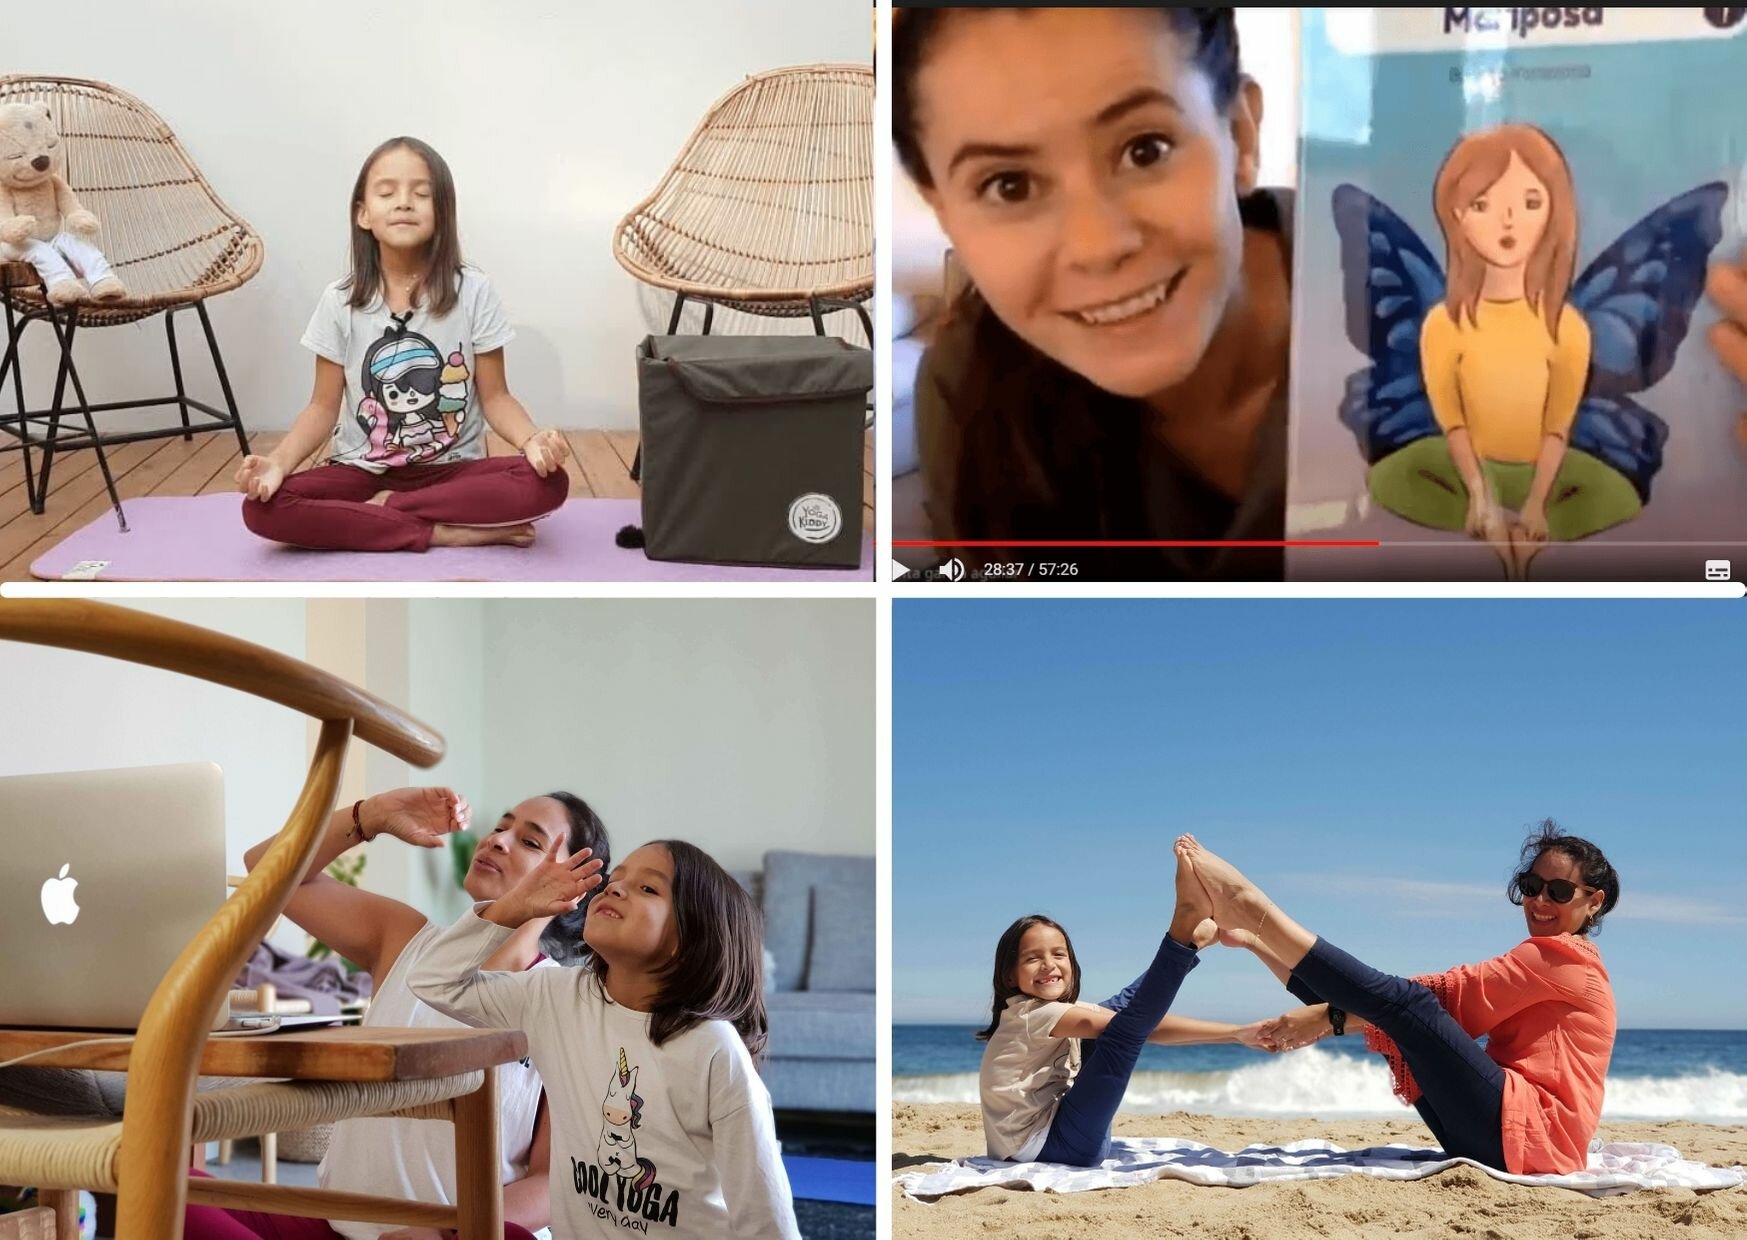 Realiza una clase y/o intervenciones de yoga infantil de manera exitosa